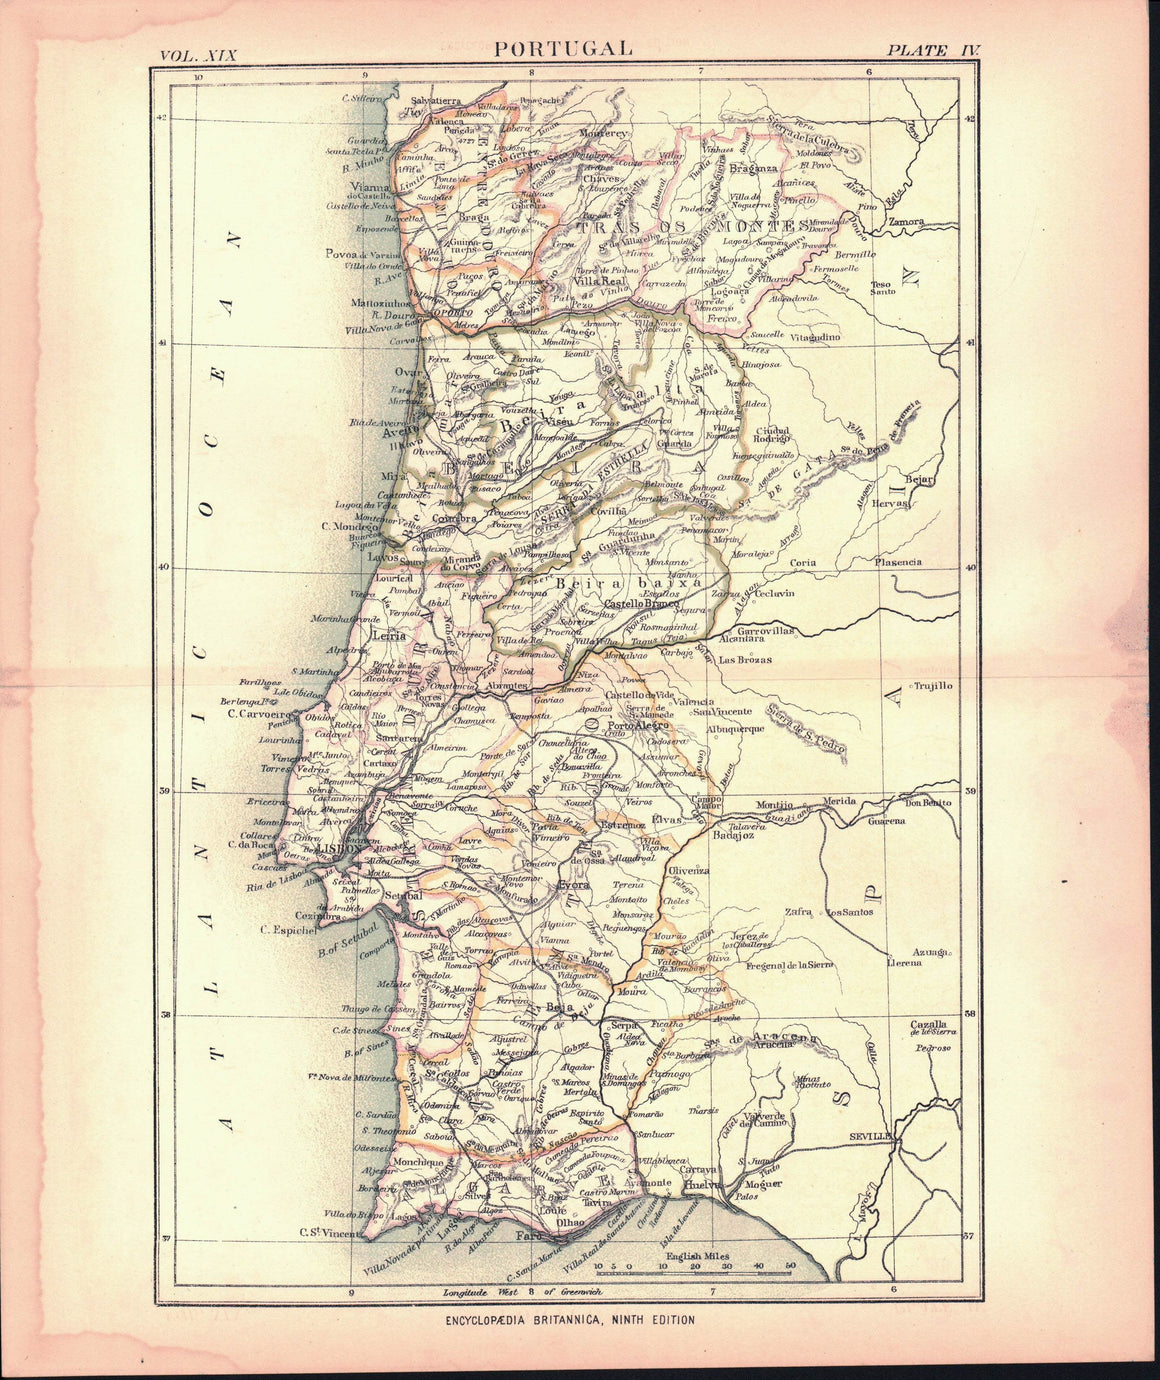 1885 Portugal - Britannica